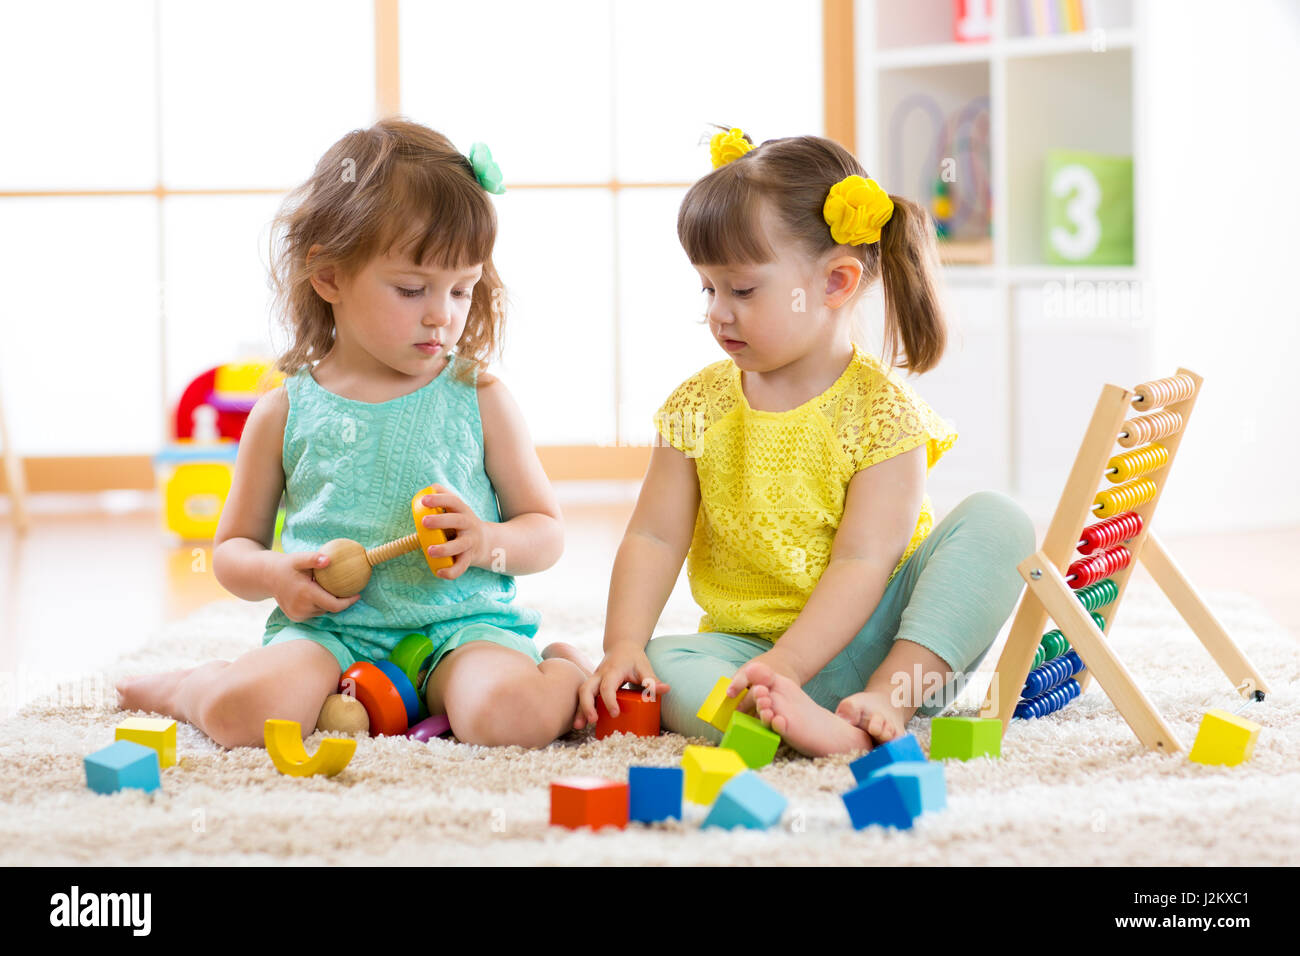 Kinder spielen mit Bausteinen. Pädagogische Spielwaren für Kinder von Vorschule und Kindergarten. Kleine Mädchen bauen Spielzeug daheim oder Kindertagesstätten. Stockfoto